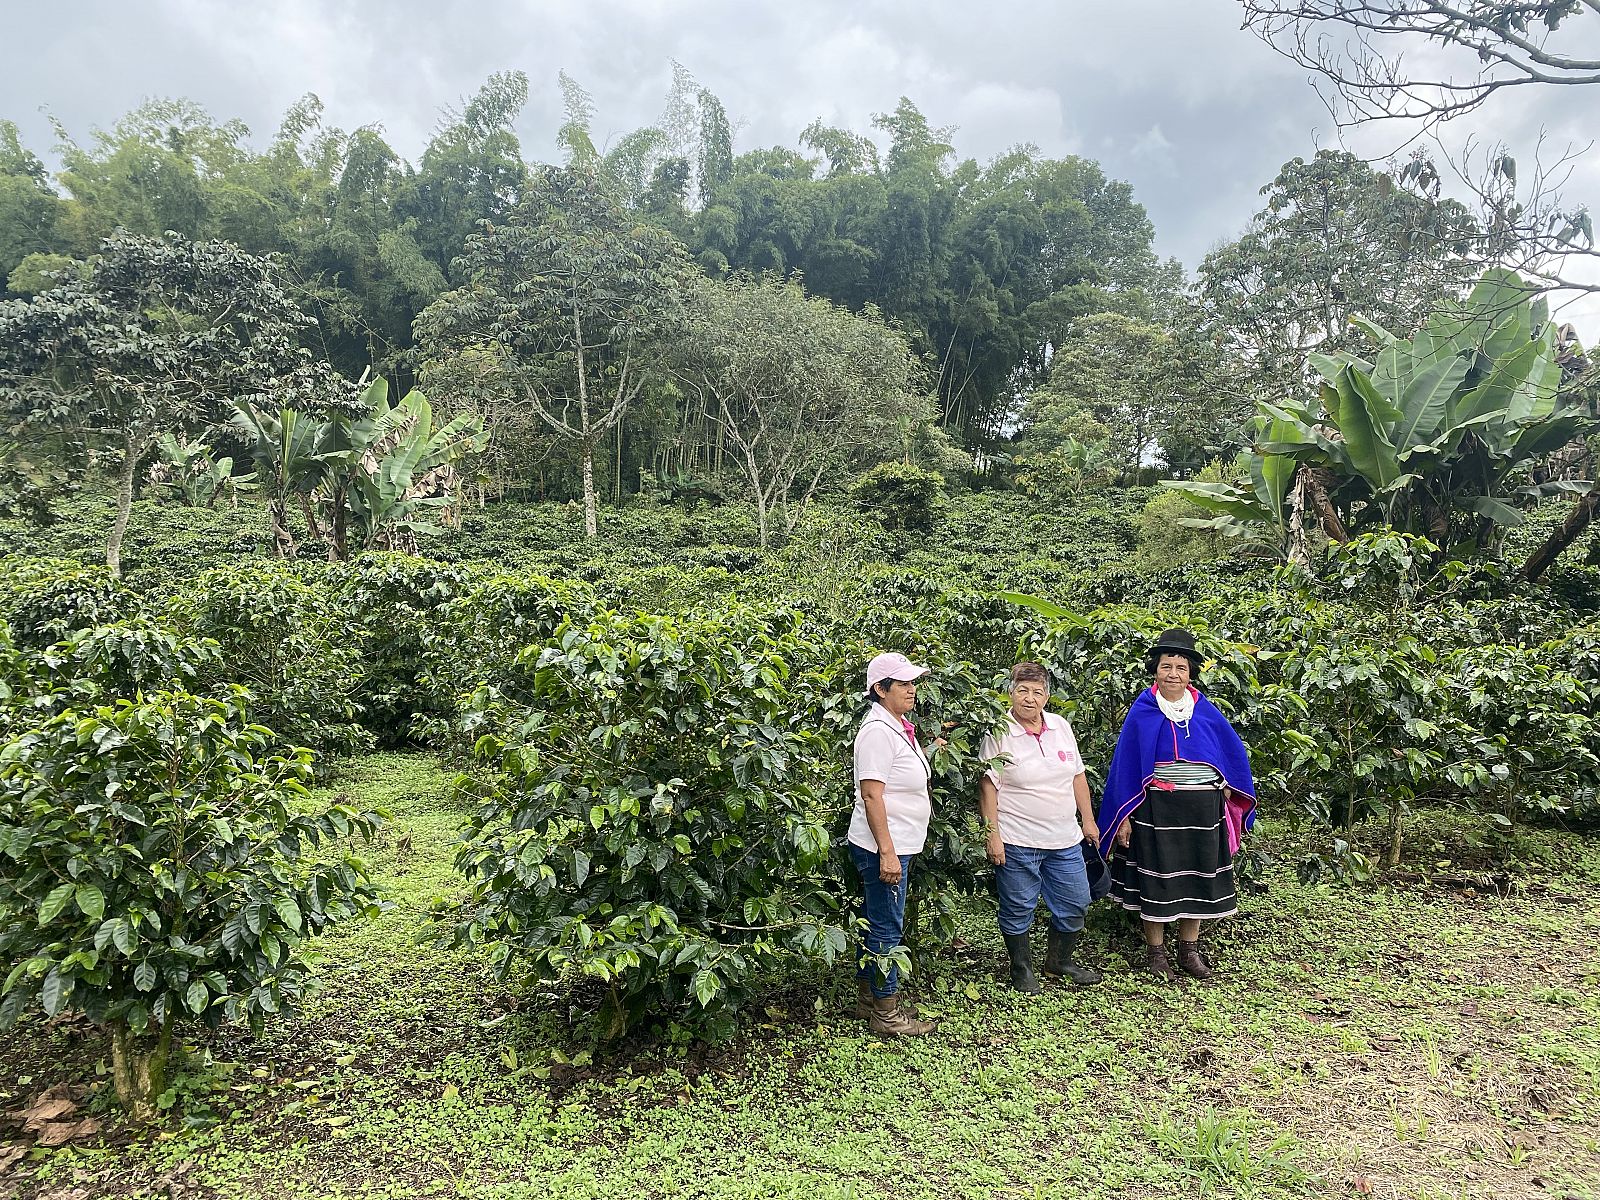 El café de Colombia con aroma feminista